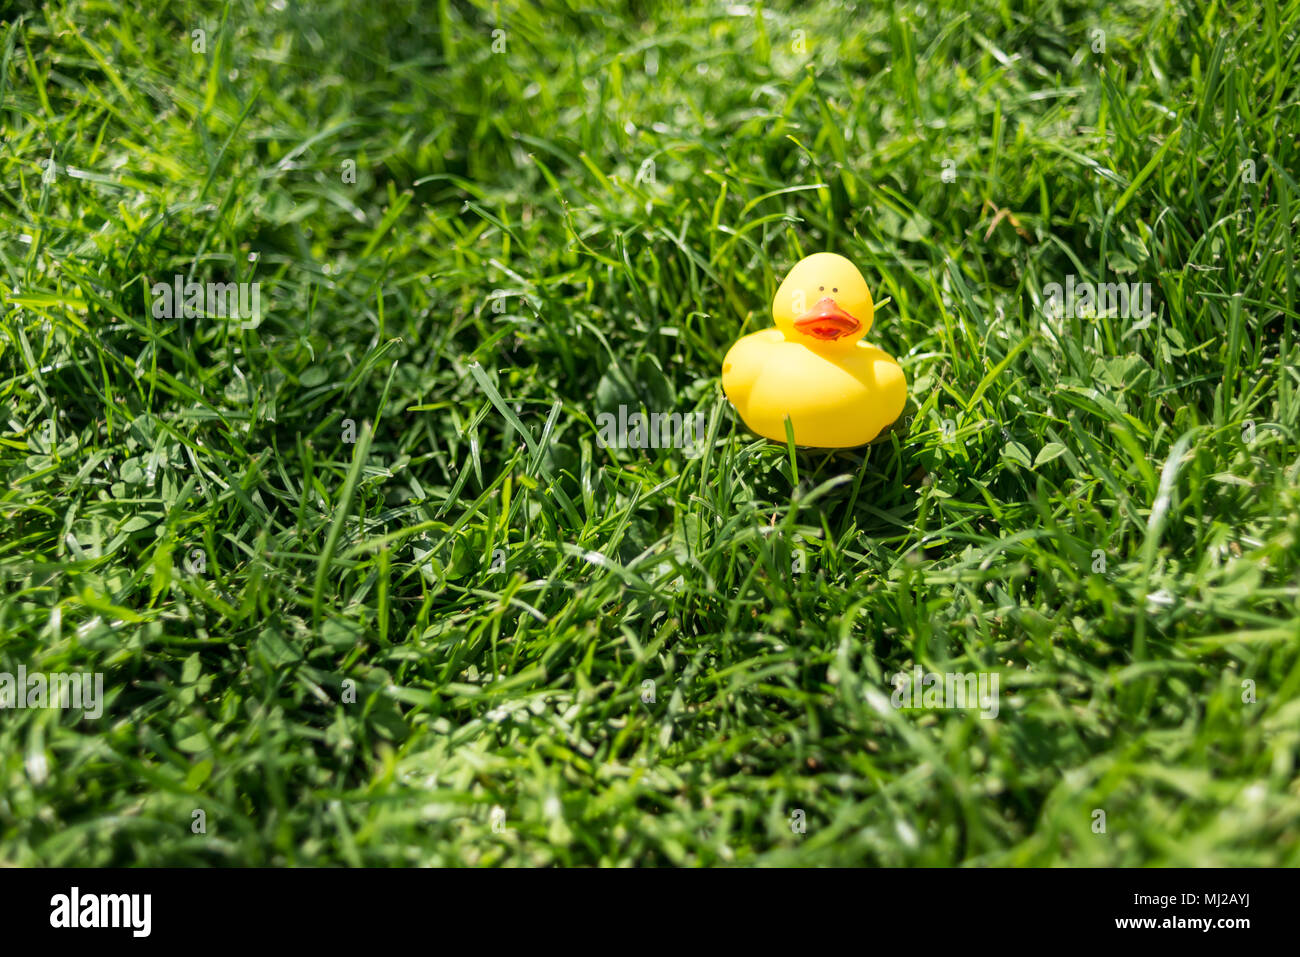 Un simpatico gomma gialla anatra giocattolo flottante giacente su erba verde di un giardino Foto Stock